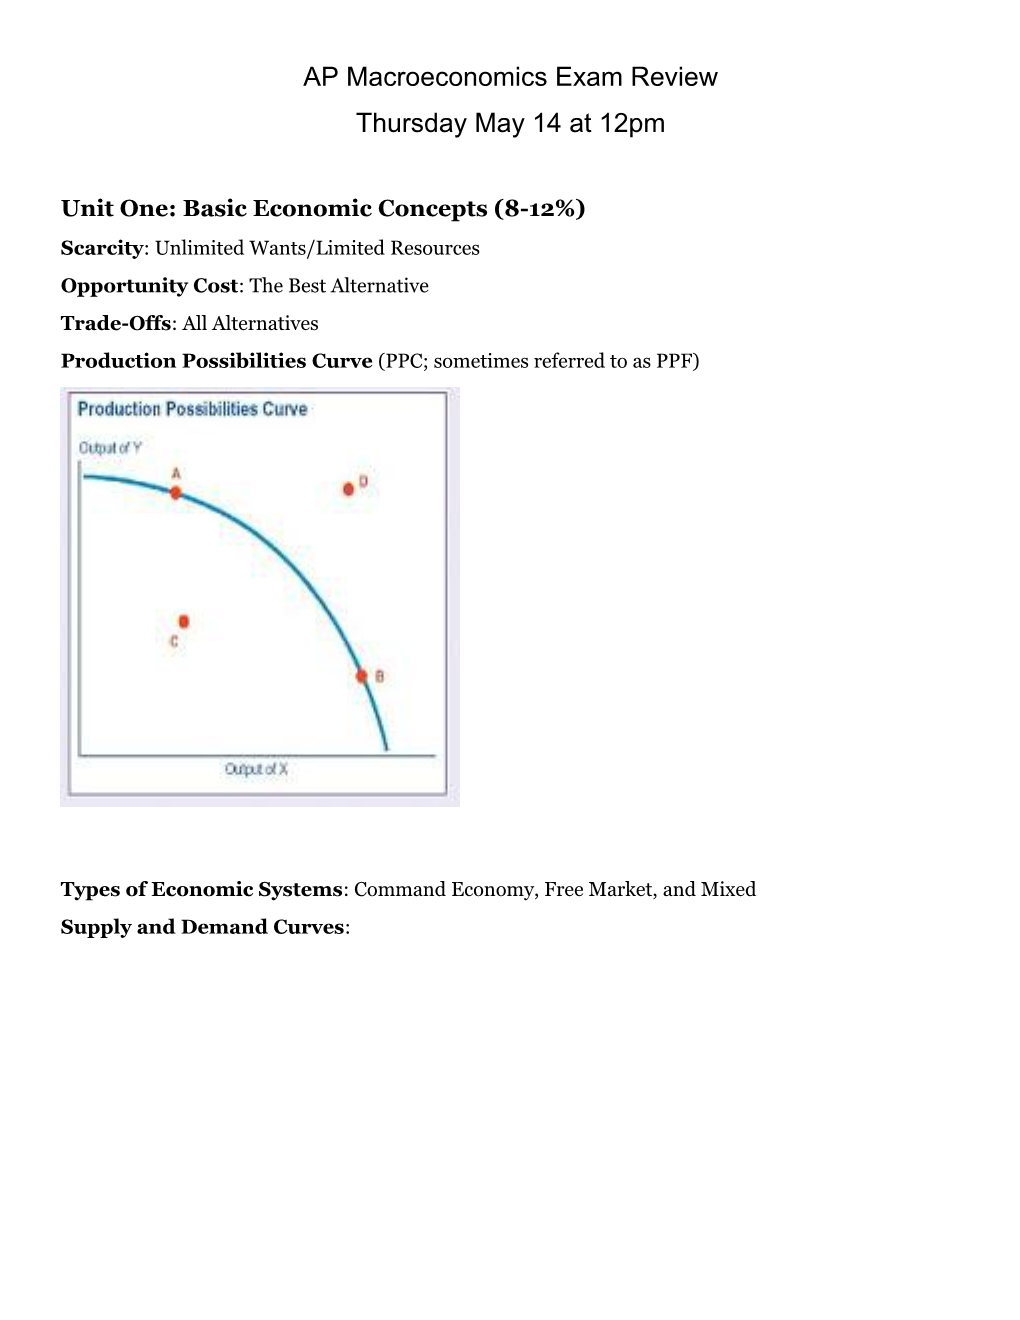 Unit One: Basic Economic Concepts (8-12%)